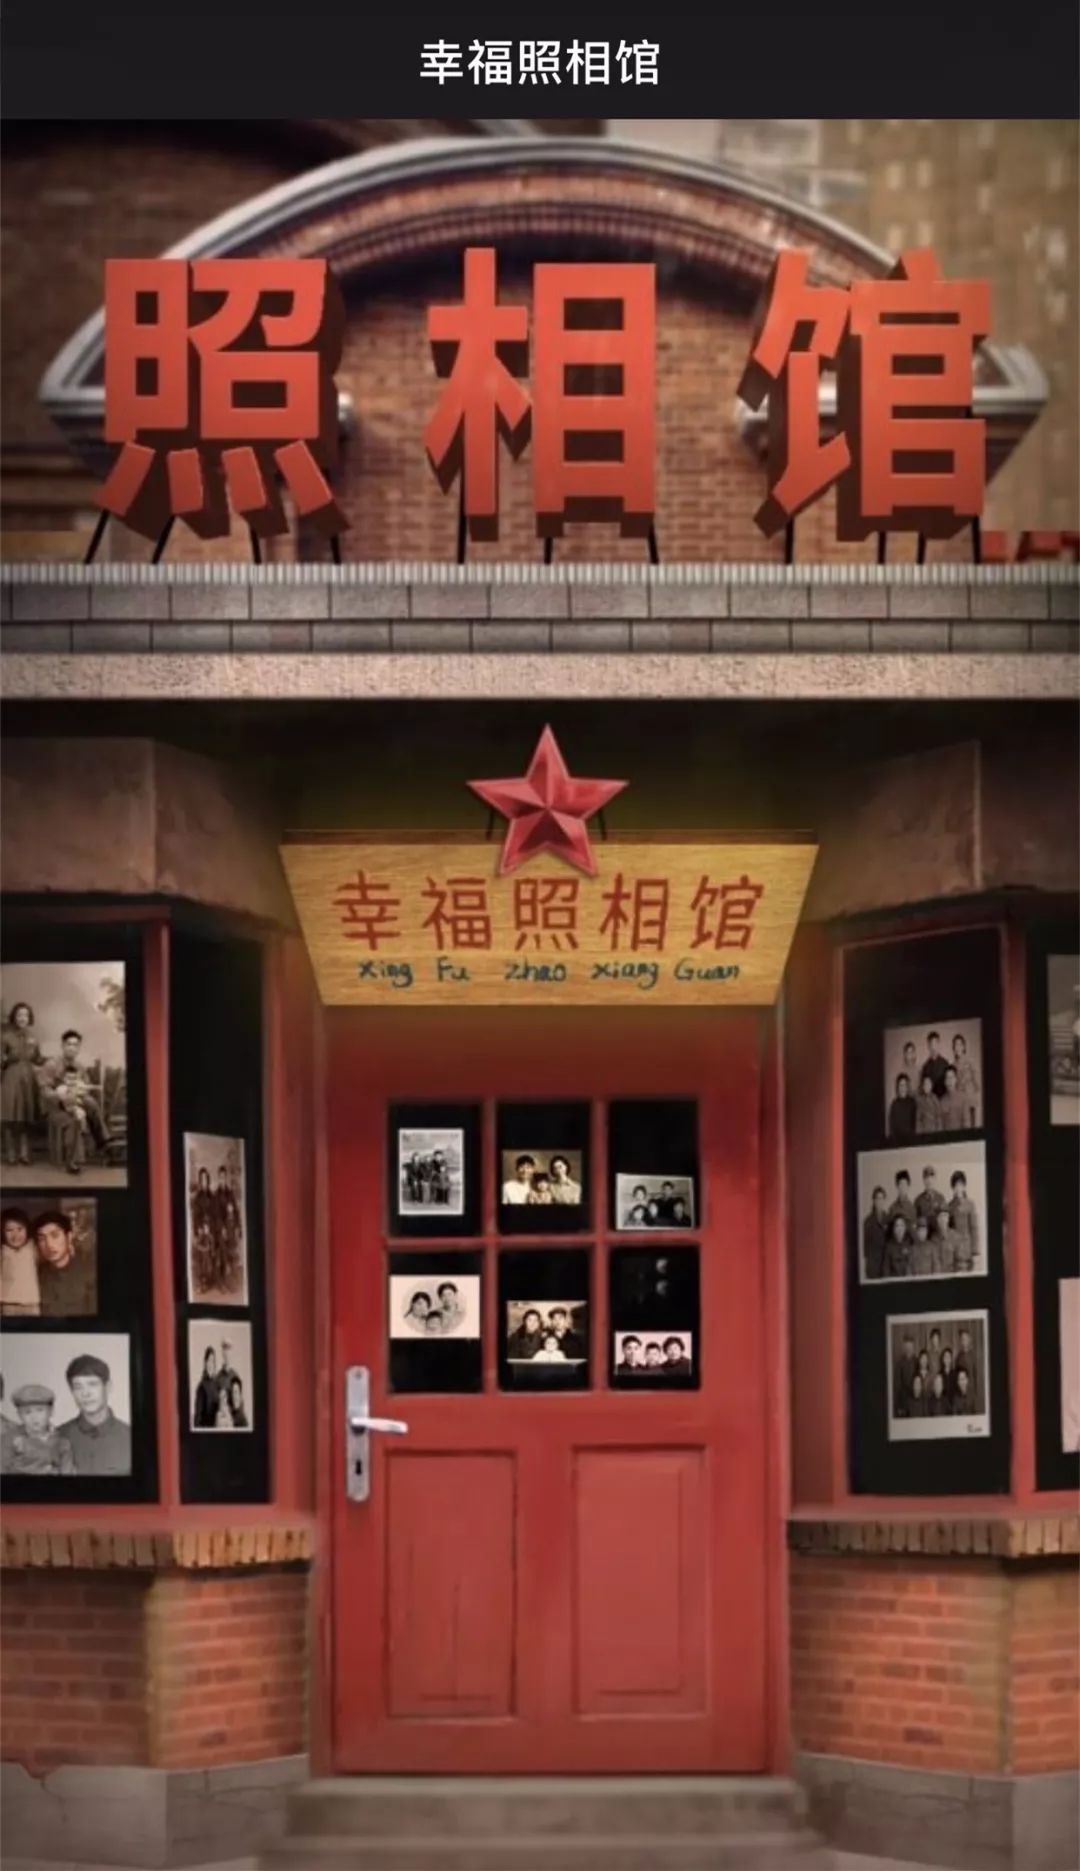 从今天开始,深圳晚报将联合腾讯天天p图等团队推出《幸福照相馆之我的